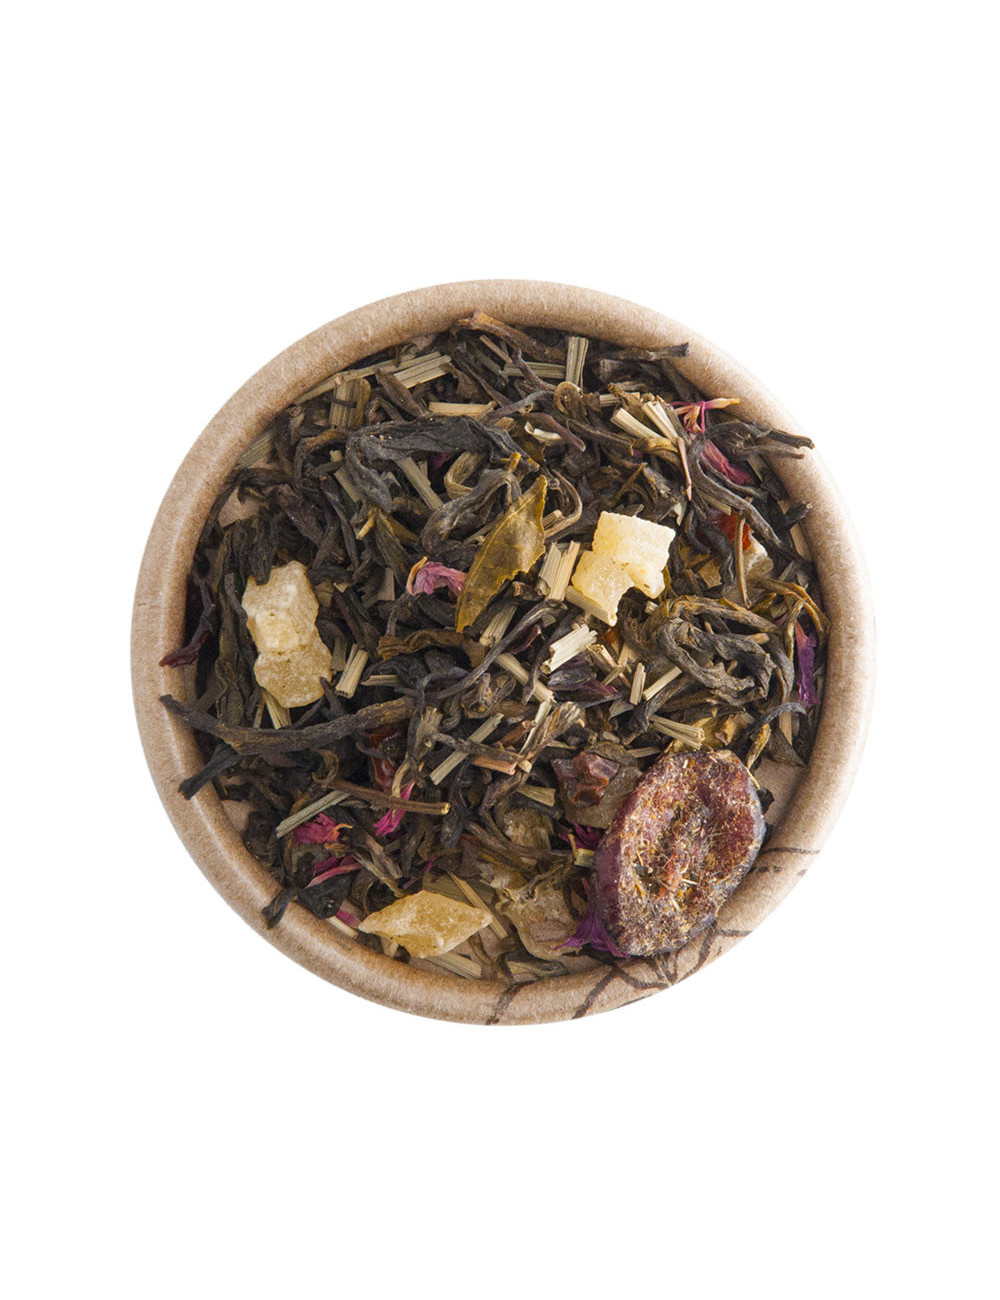 Mirtillo tè bianco aromatizzato - La Pianta del Tè shop online